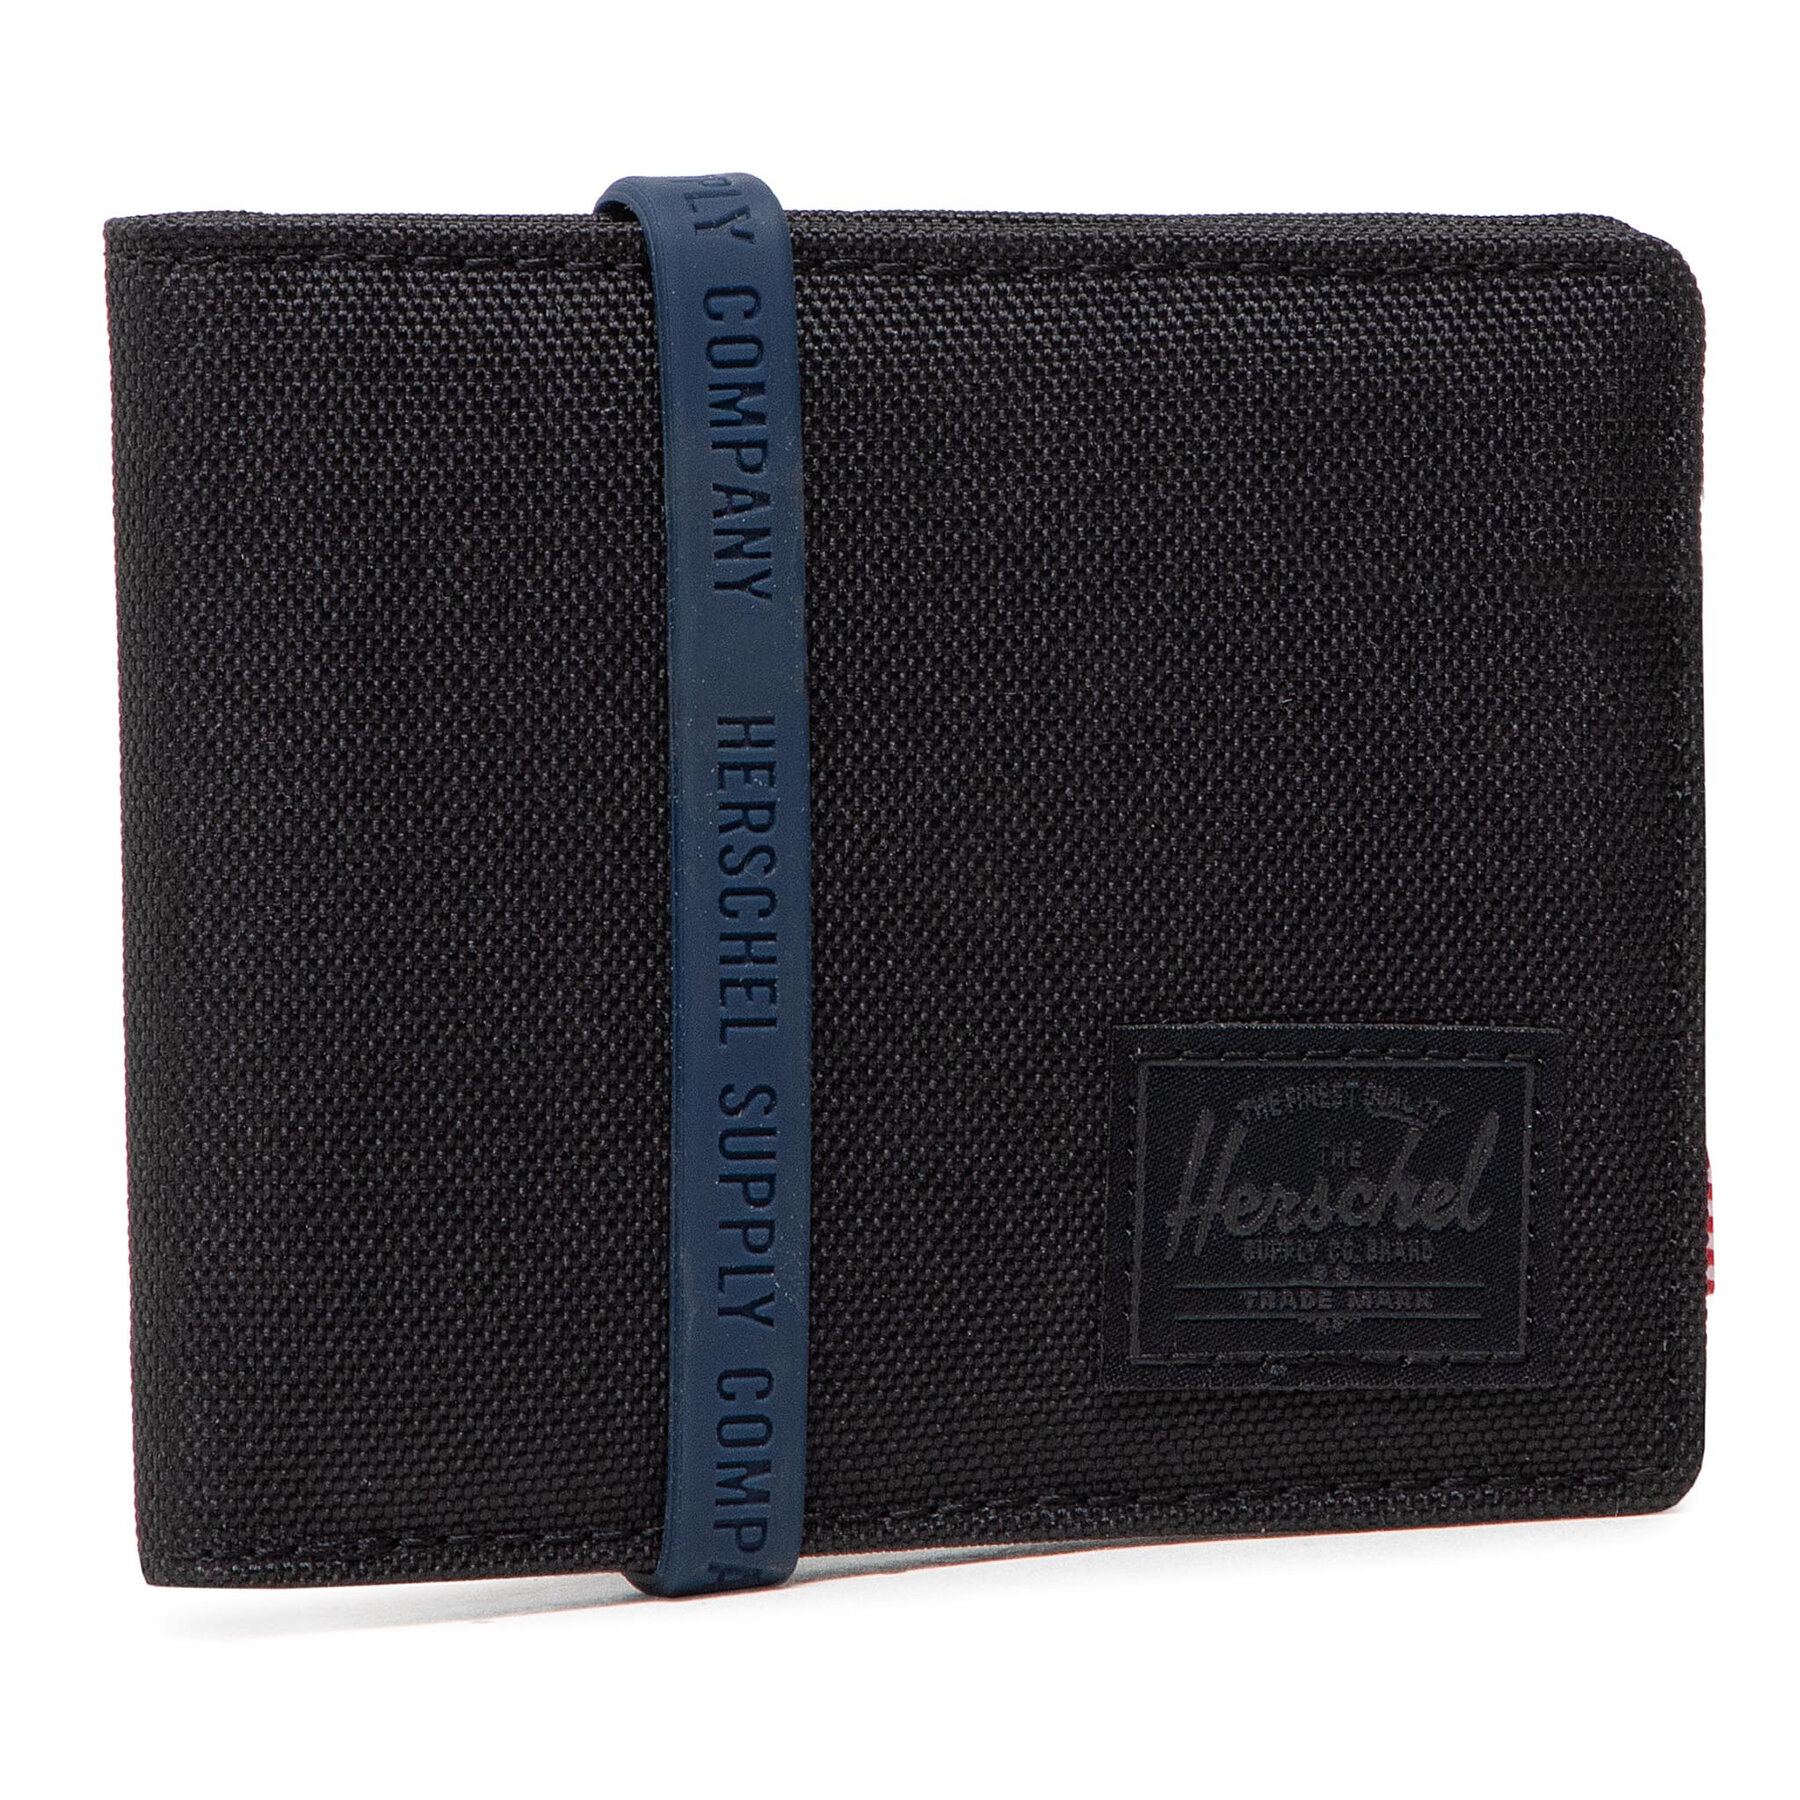 Comprar en oferta Herschel Roya Wallet (10363-00535) black